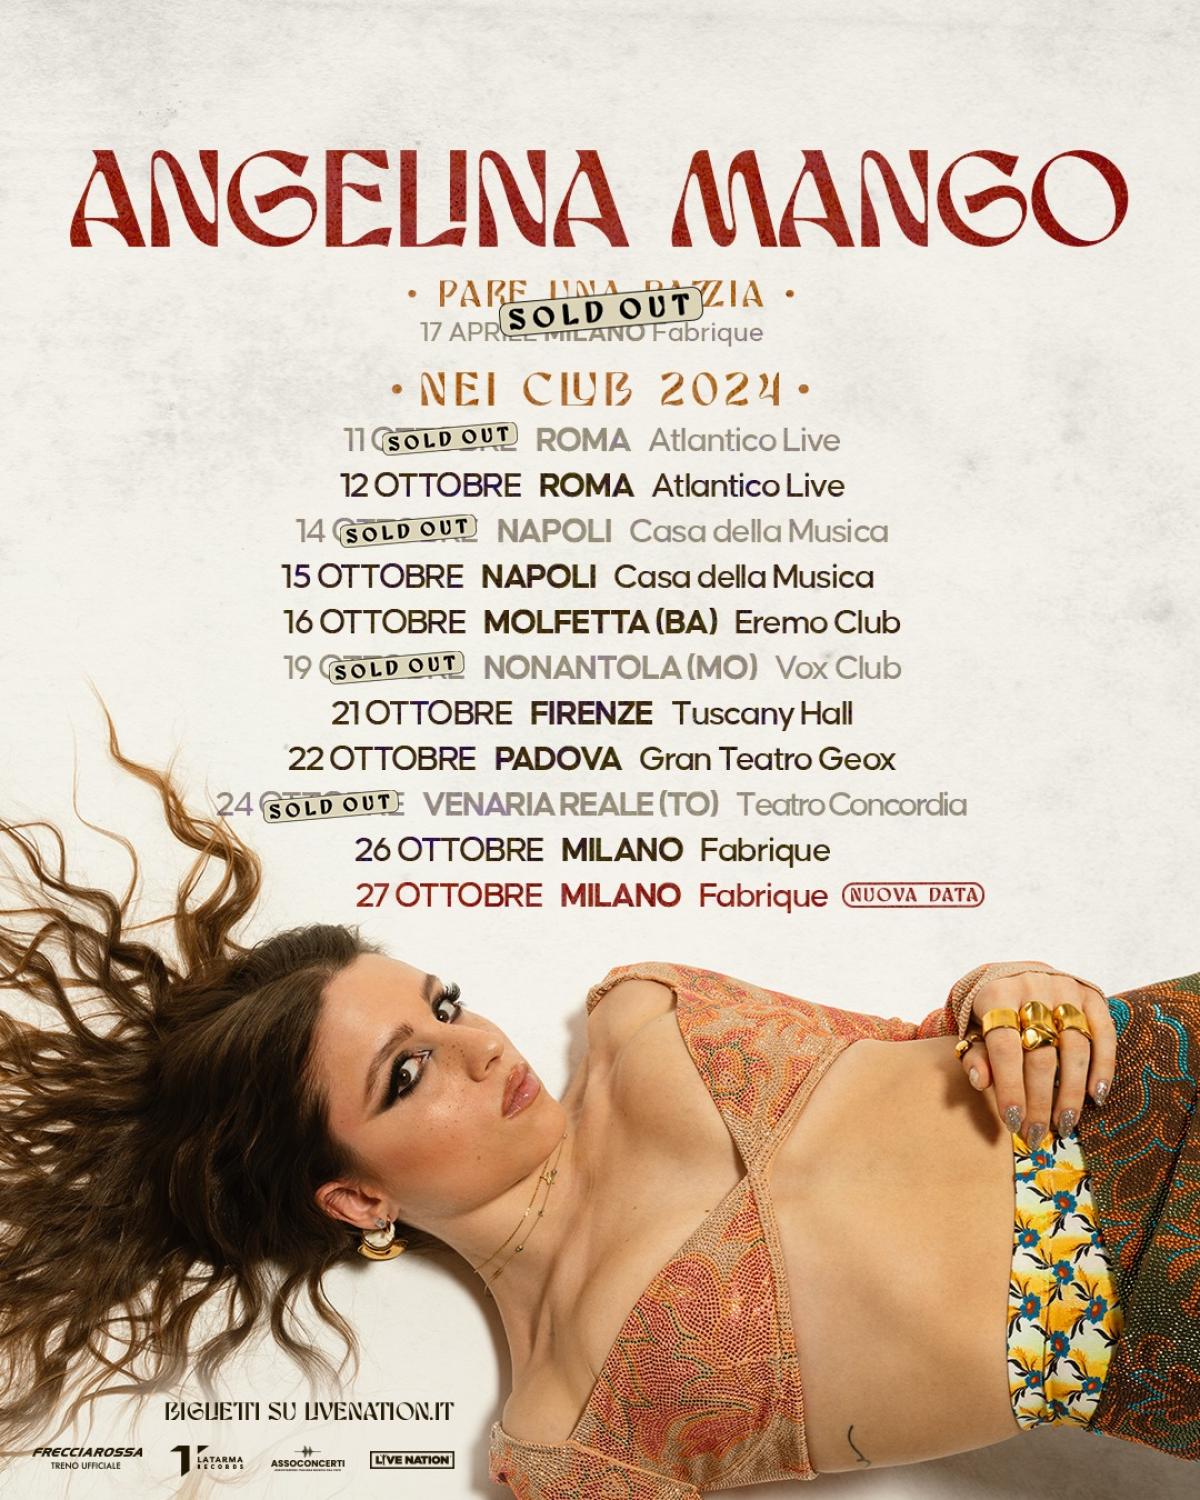 Angelina Mango in der Fabrique Milano Tickets